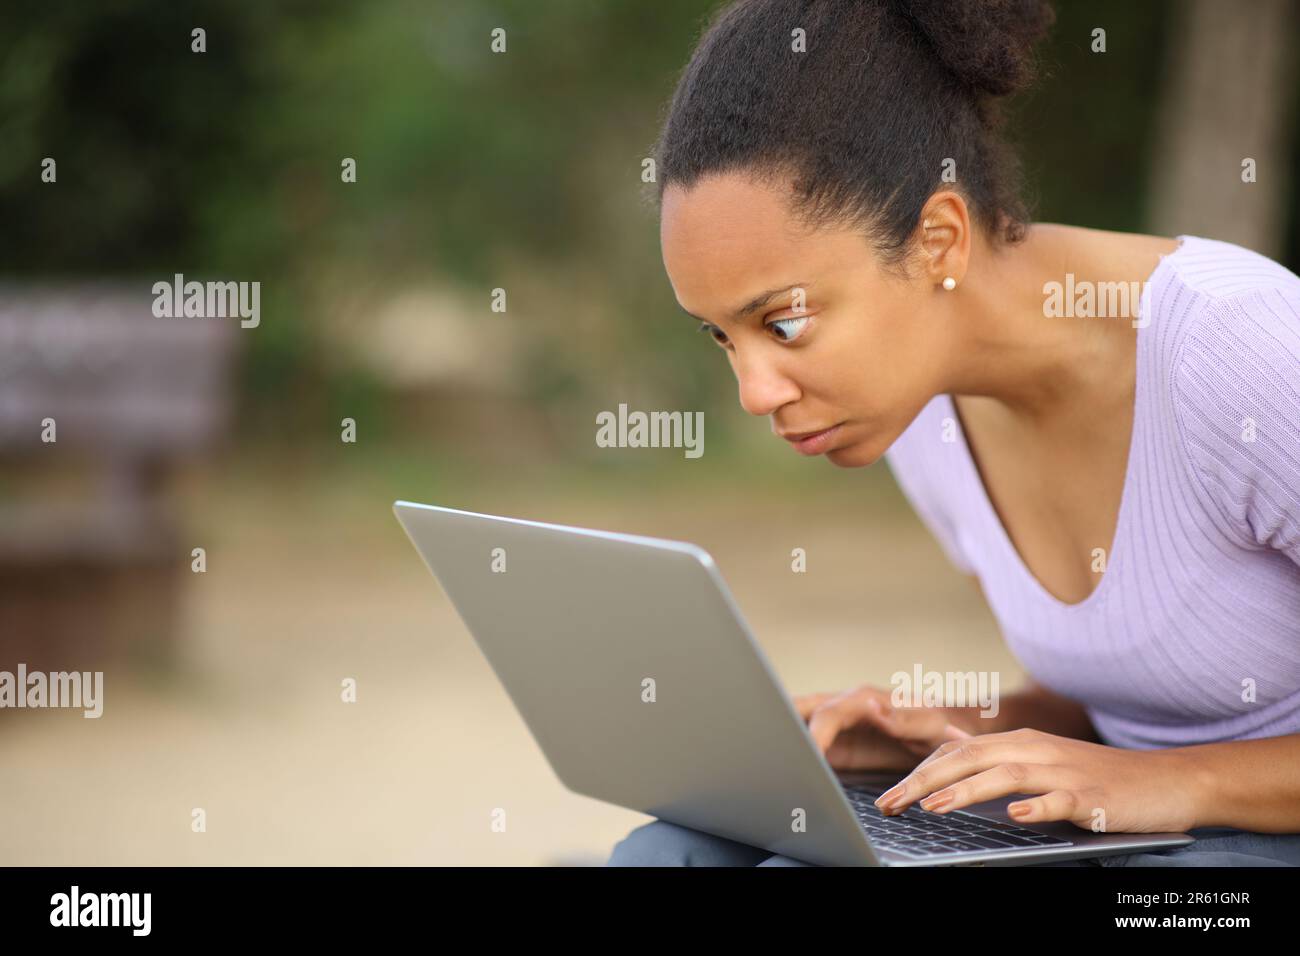 Eine schockierte schwarze Frau, die im Park auf ihren Laptop schaut Stockfoto